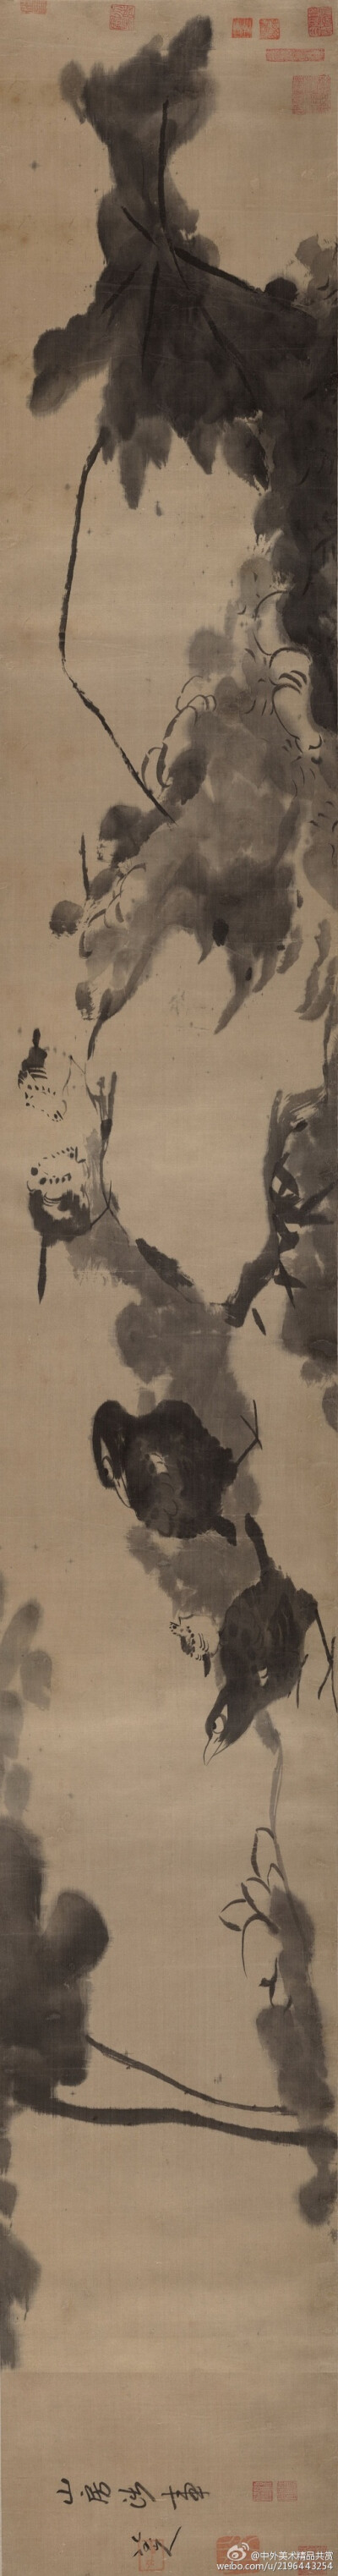 清 朱耷《蓮塘戲禽圖卷》——紙本水墨，27.3 × 205.1 釐米，現藏大都會藝術博物館。